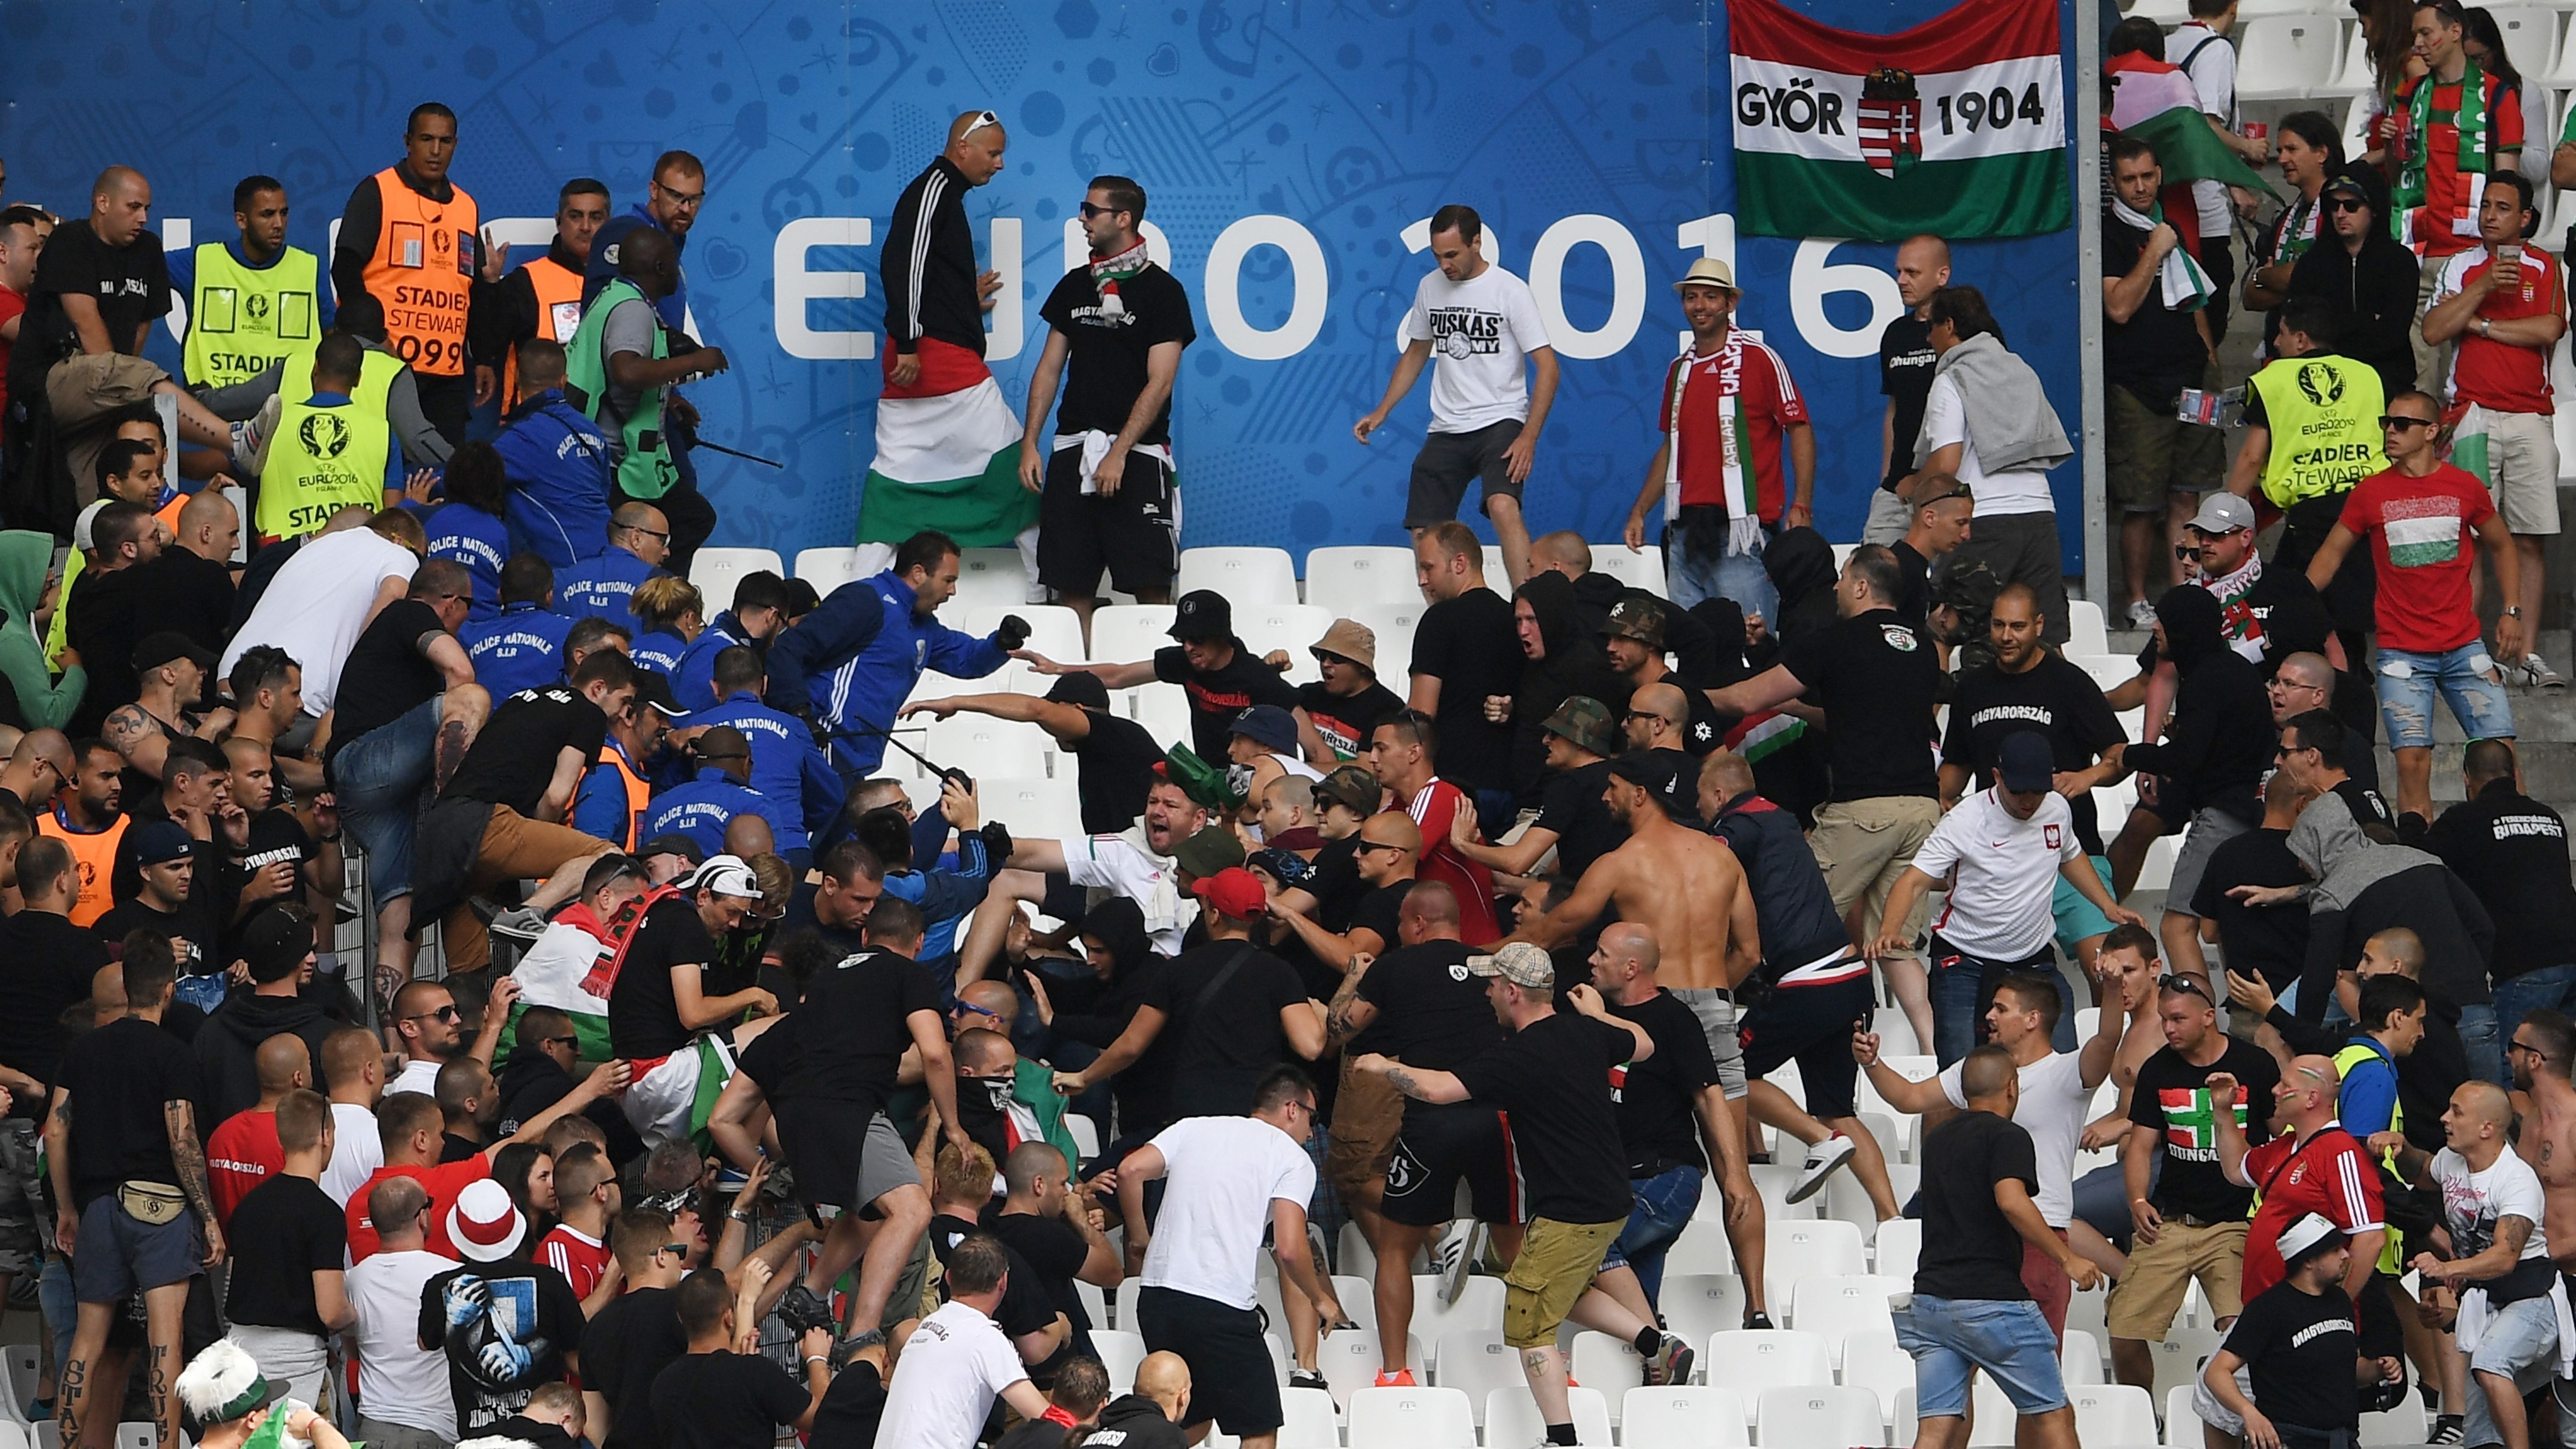 Евро-2016: Фанаты Венгрии устроили массовую драку на стадионе